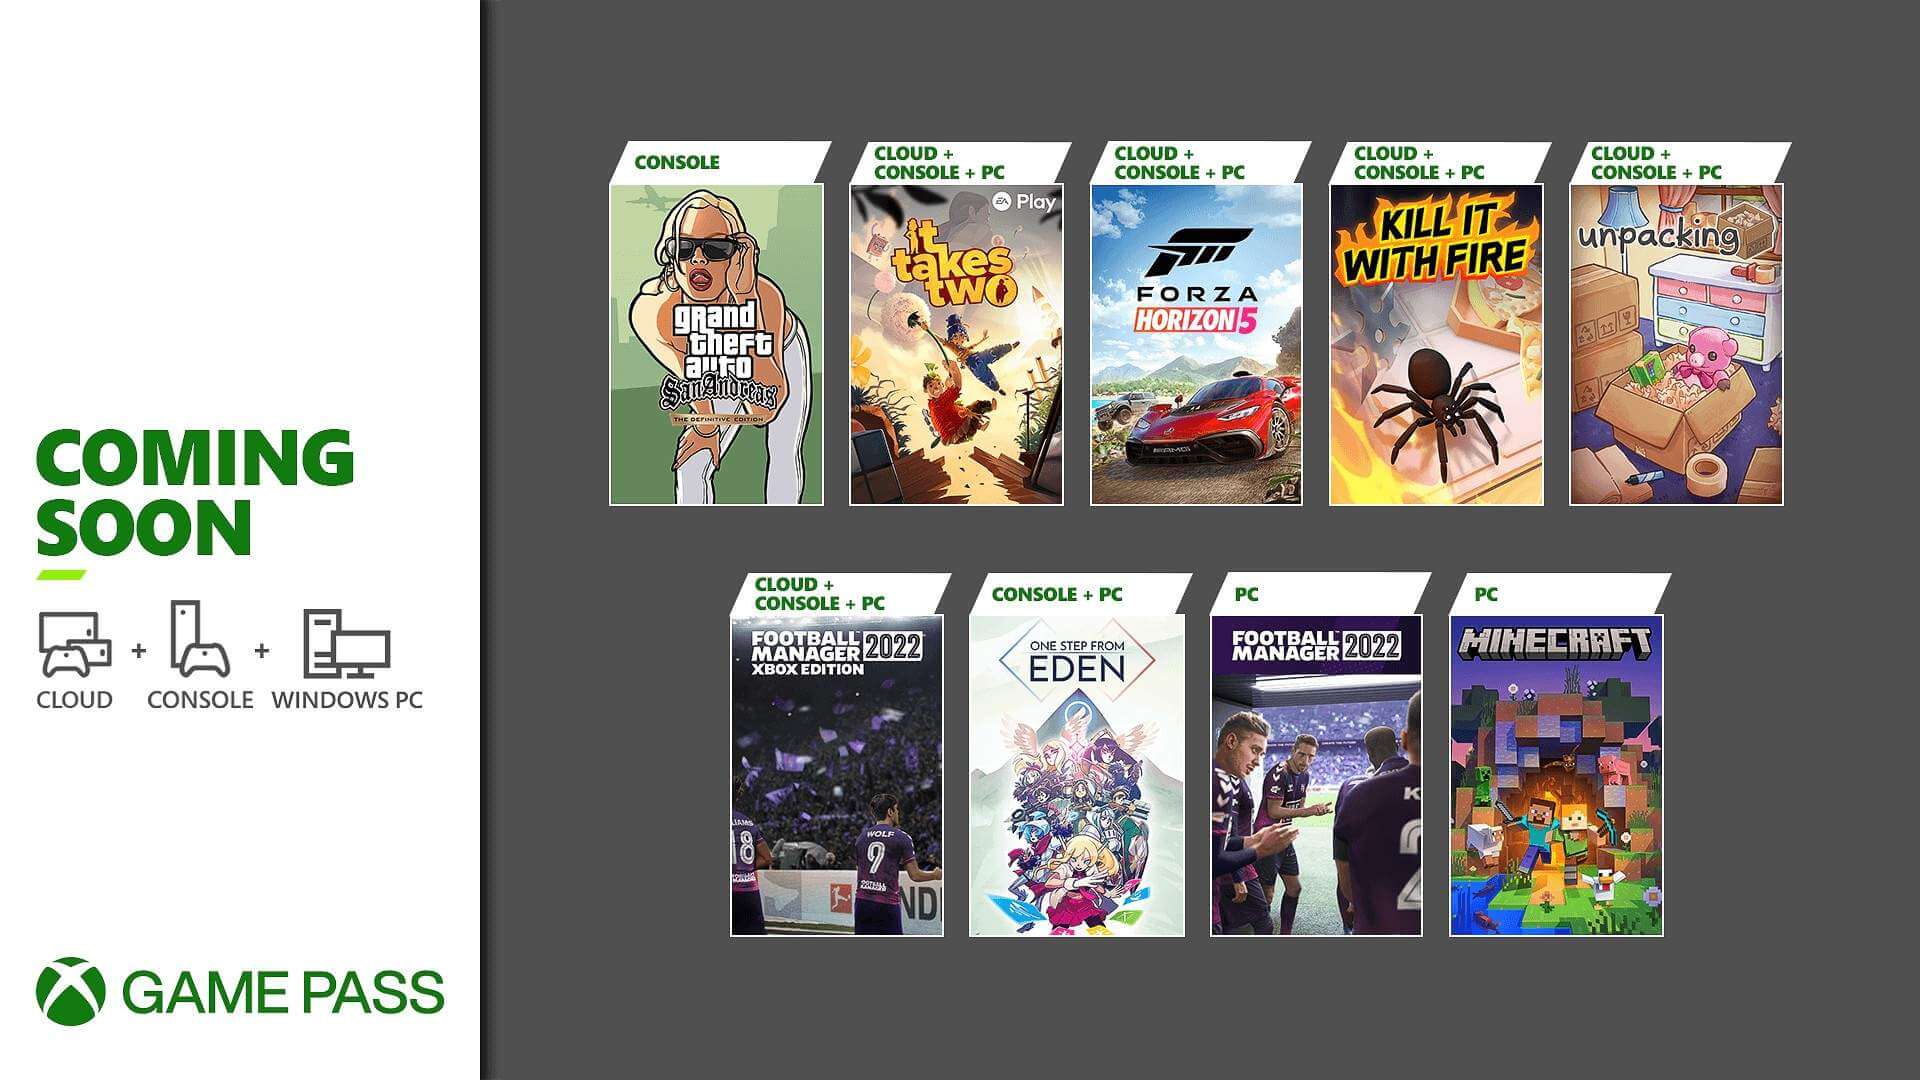 Lo siento agua Dime Los nuevos títulos que llegarán al Xbox Game Pass durante noviembre